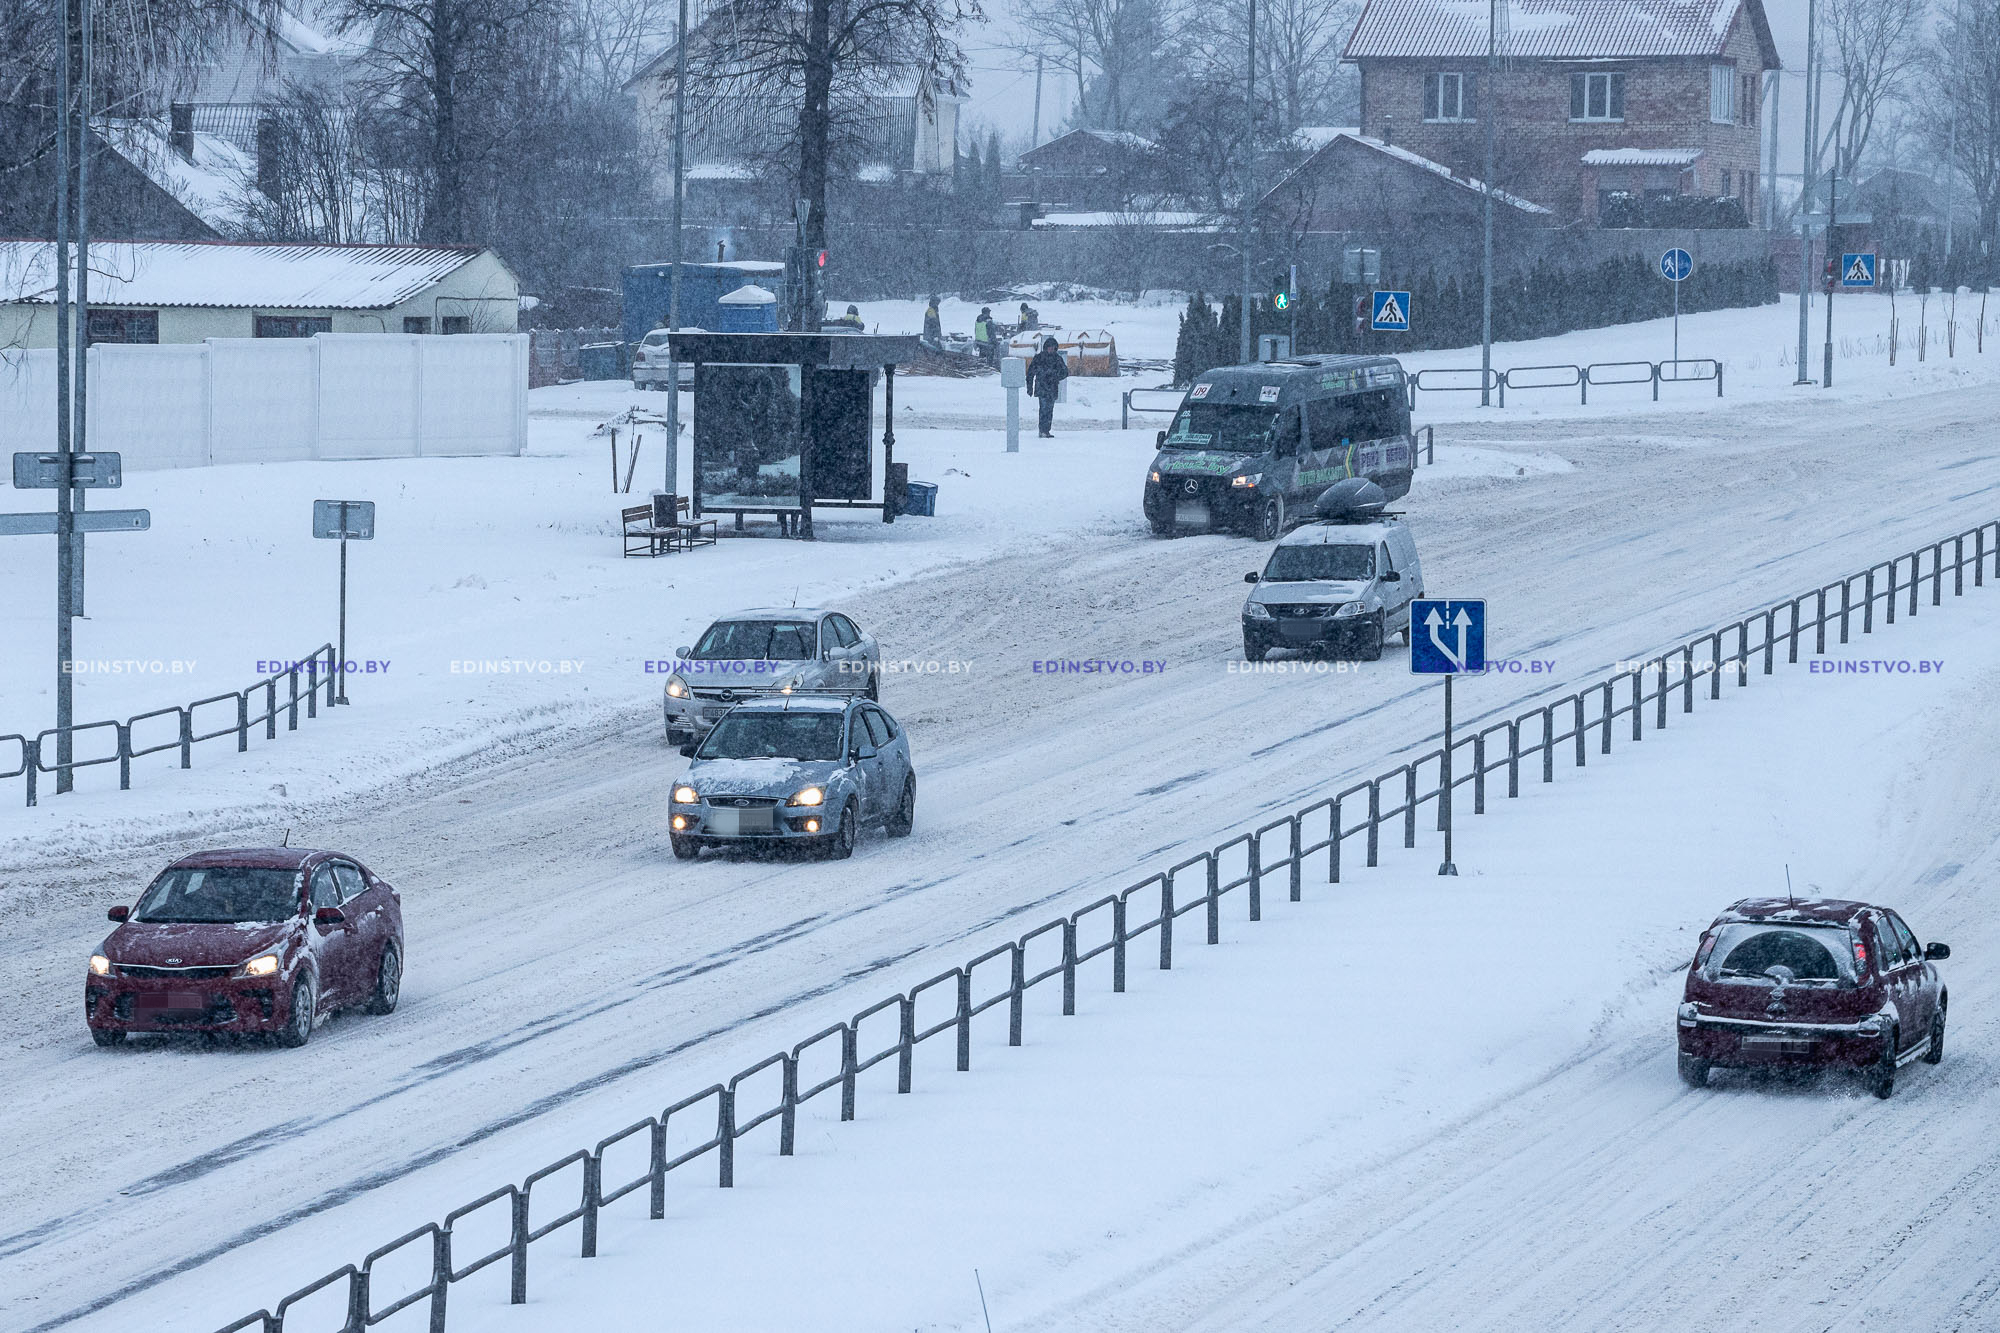 В Борисове были отменены несколько автобусных рейсов. Узнали почему